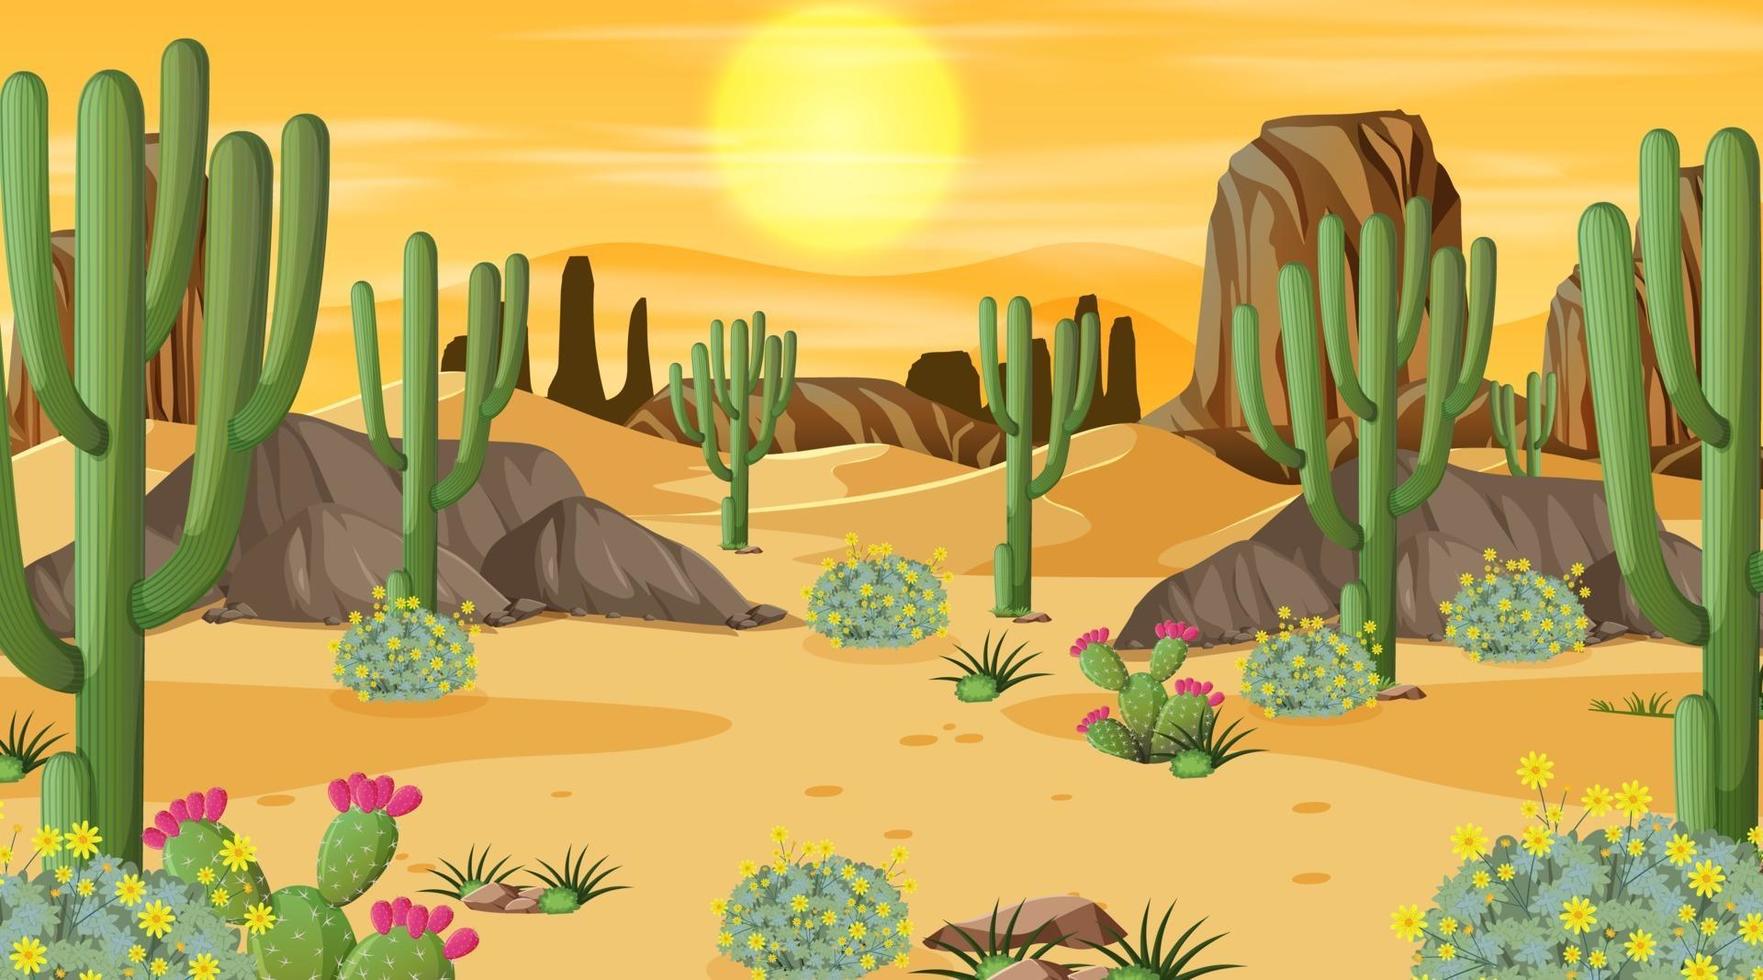 paisaje de bosque desértico en la escena del atardecer con muchos cactus vector